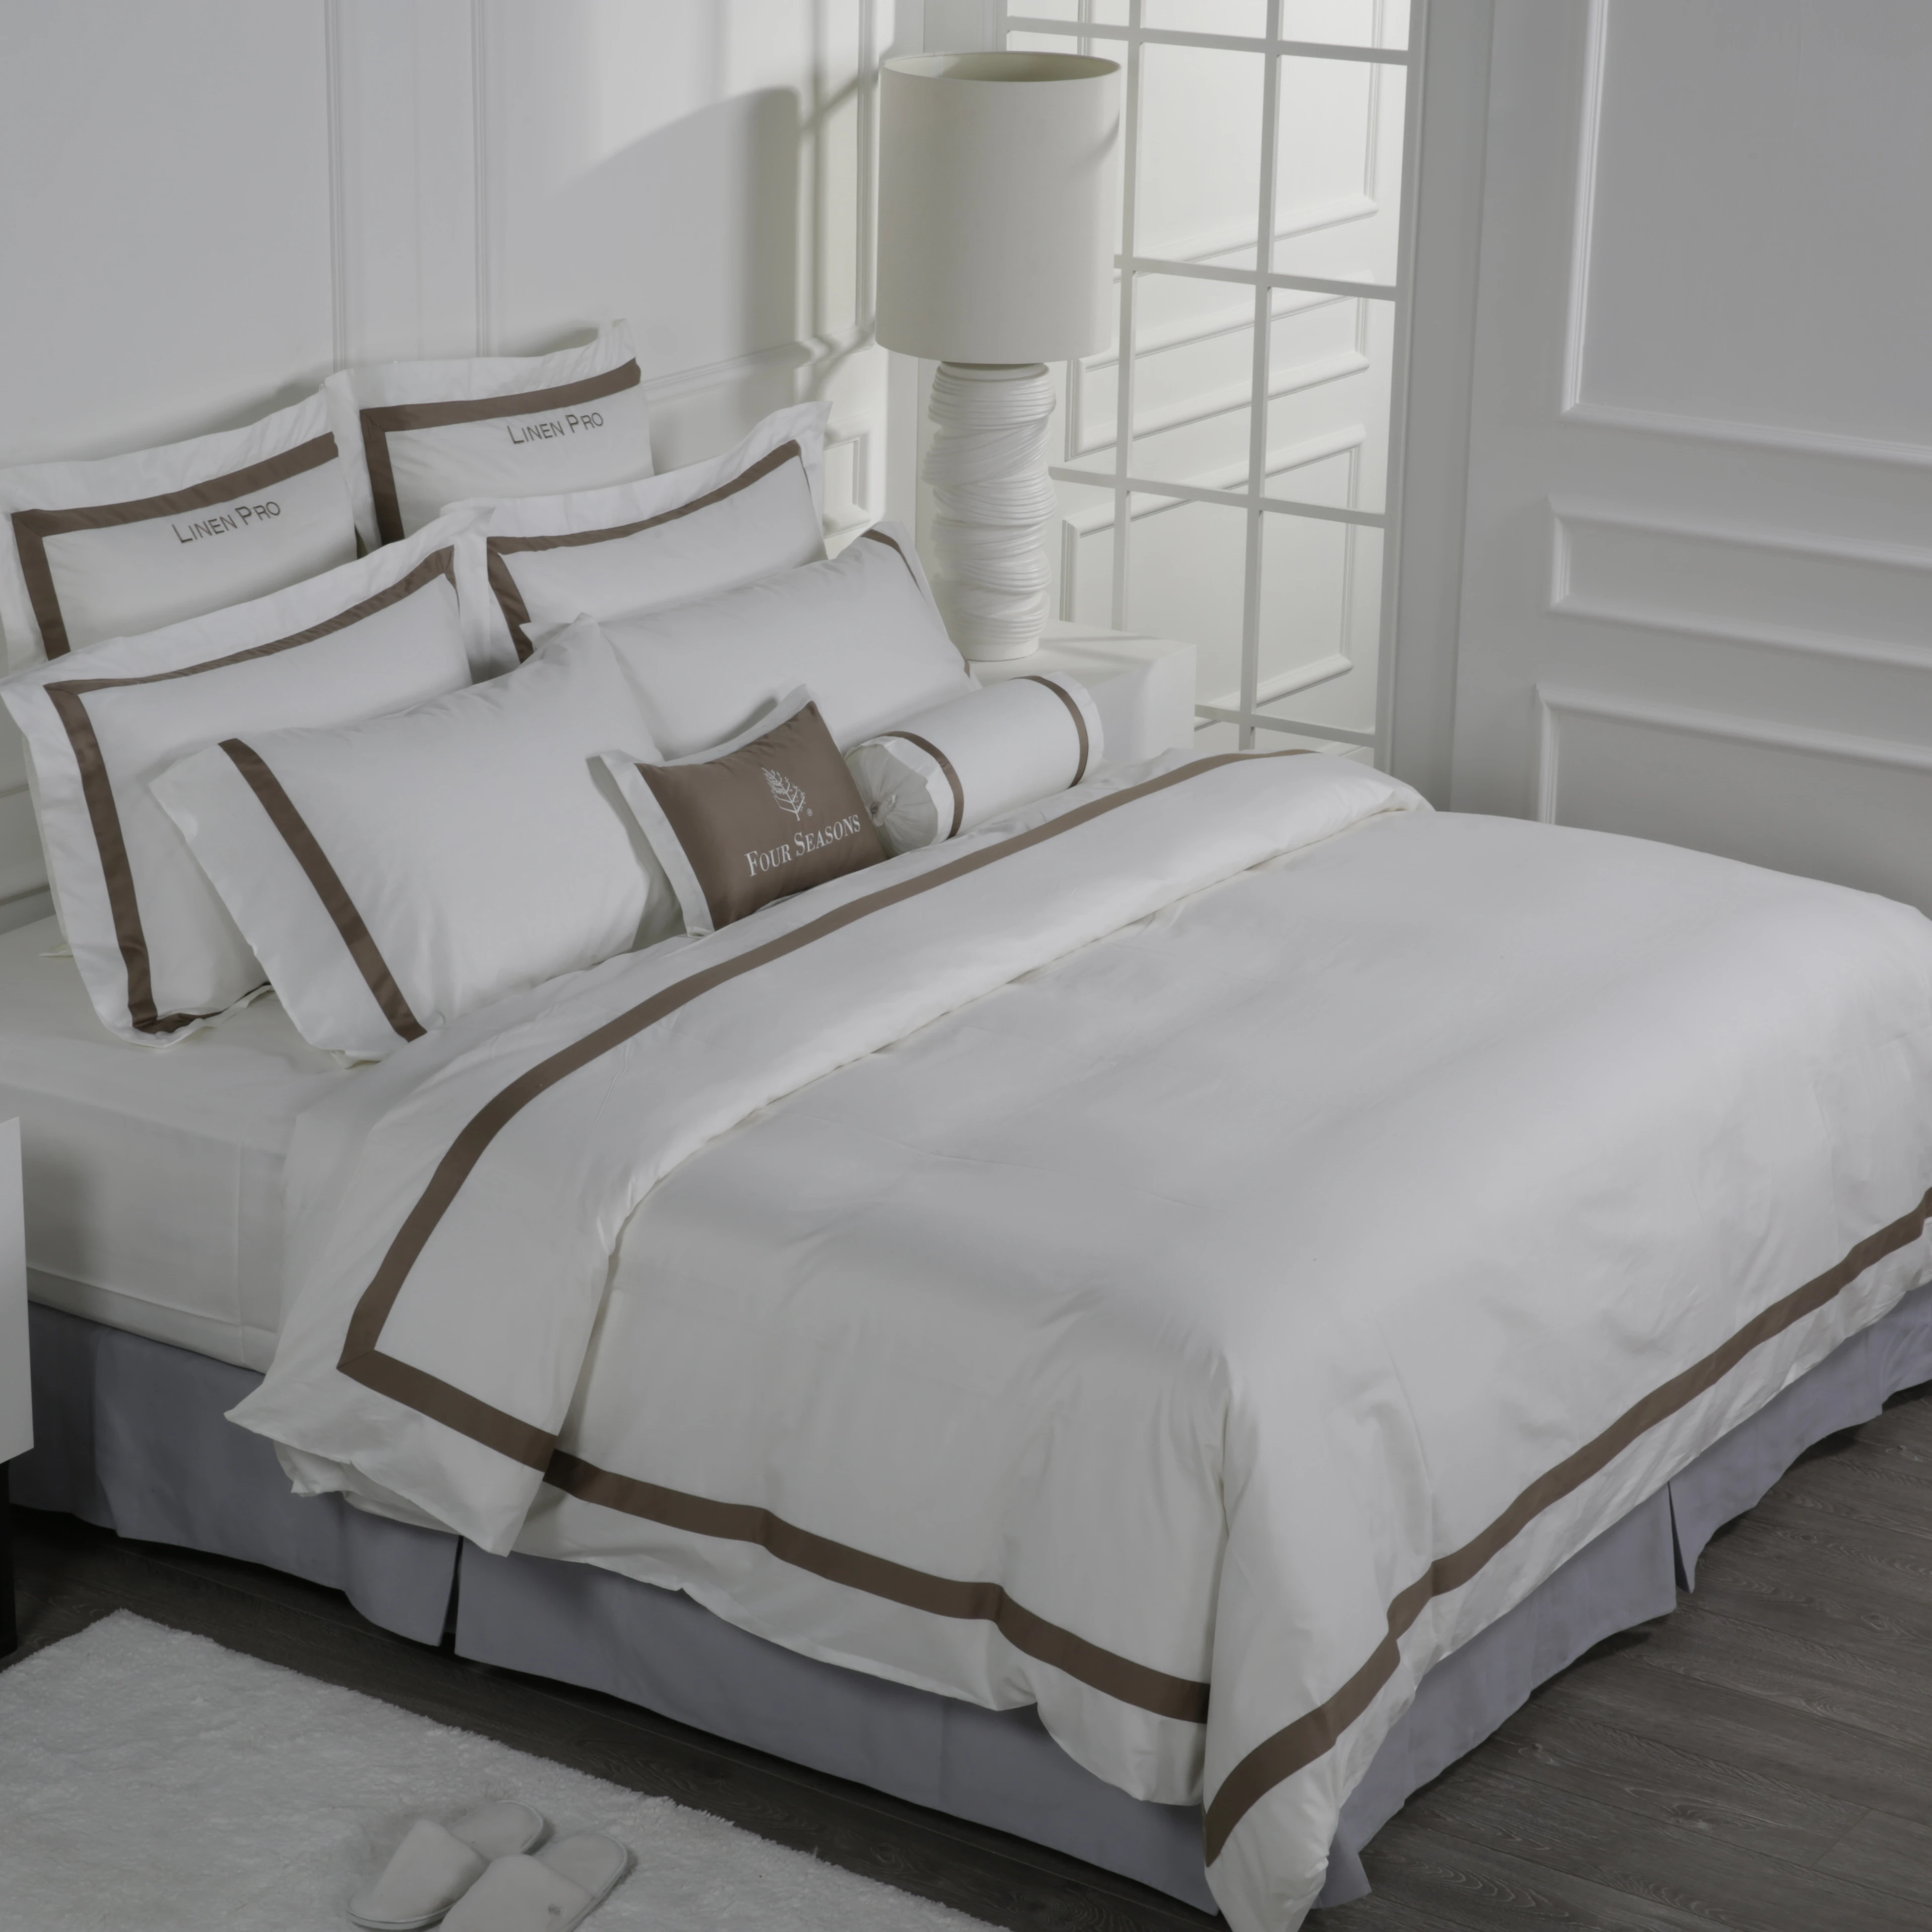 

Wholesale Comforter Set Bedding Design Double Size 100 Cotton Plain Hotel Bed Sheets